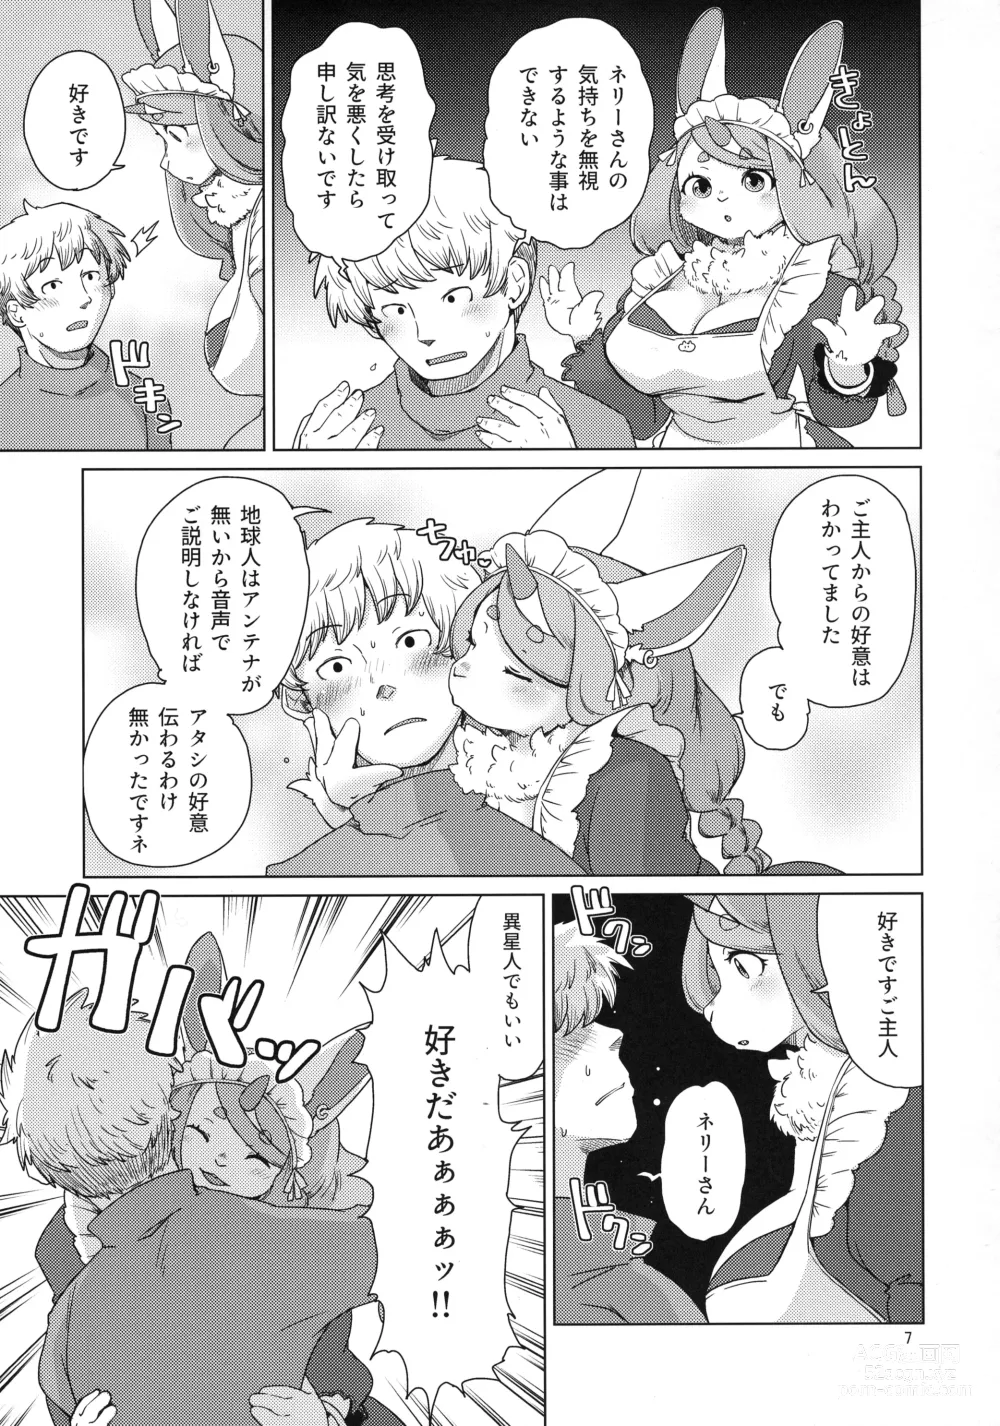 Page 7 of doujinshi Mofumofu Invasion